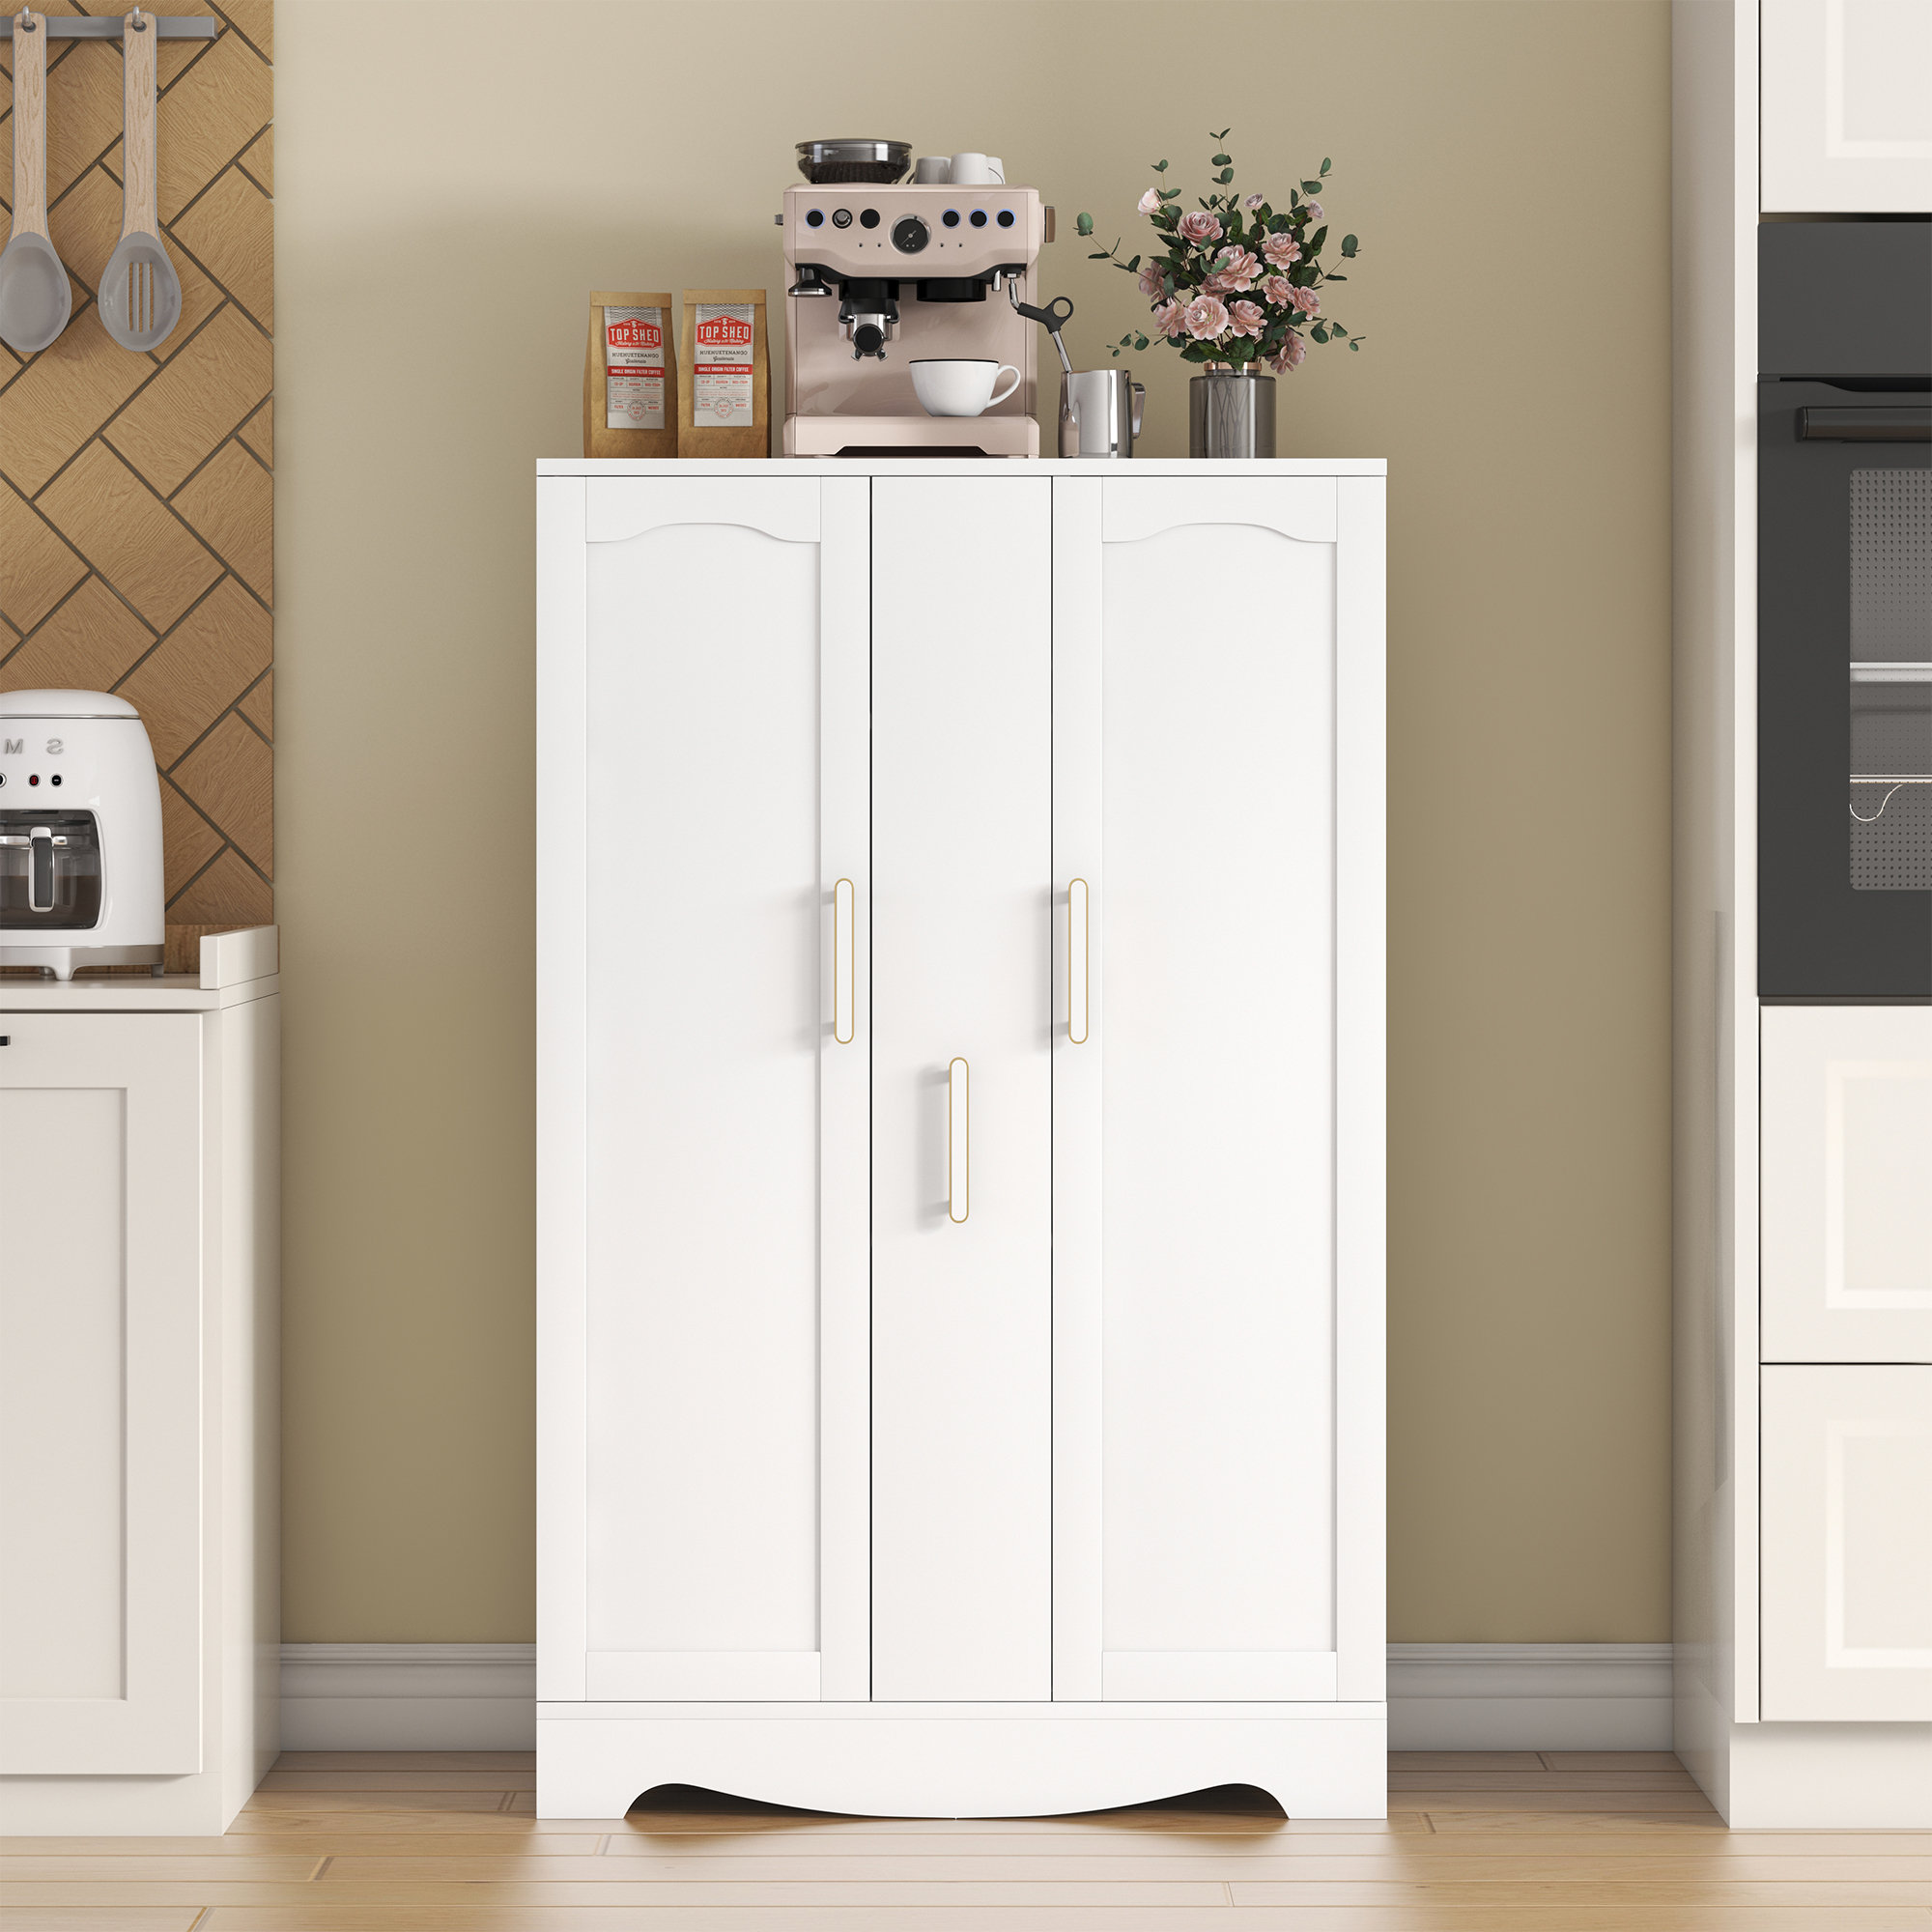 Sauder HomePlus 2-Door Kitchen Pantry Cabinet in Soft White, 1